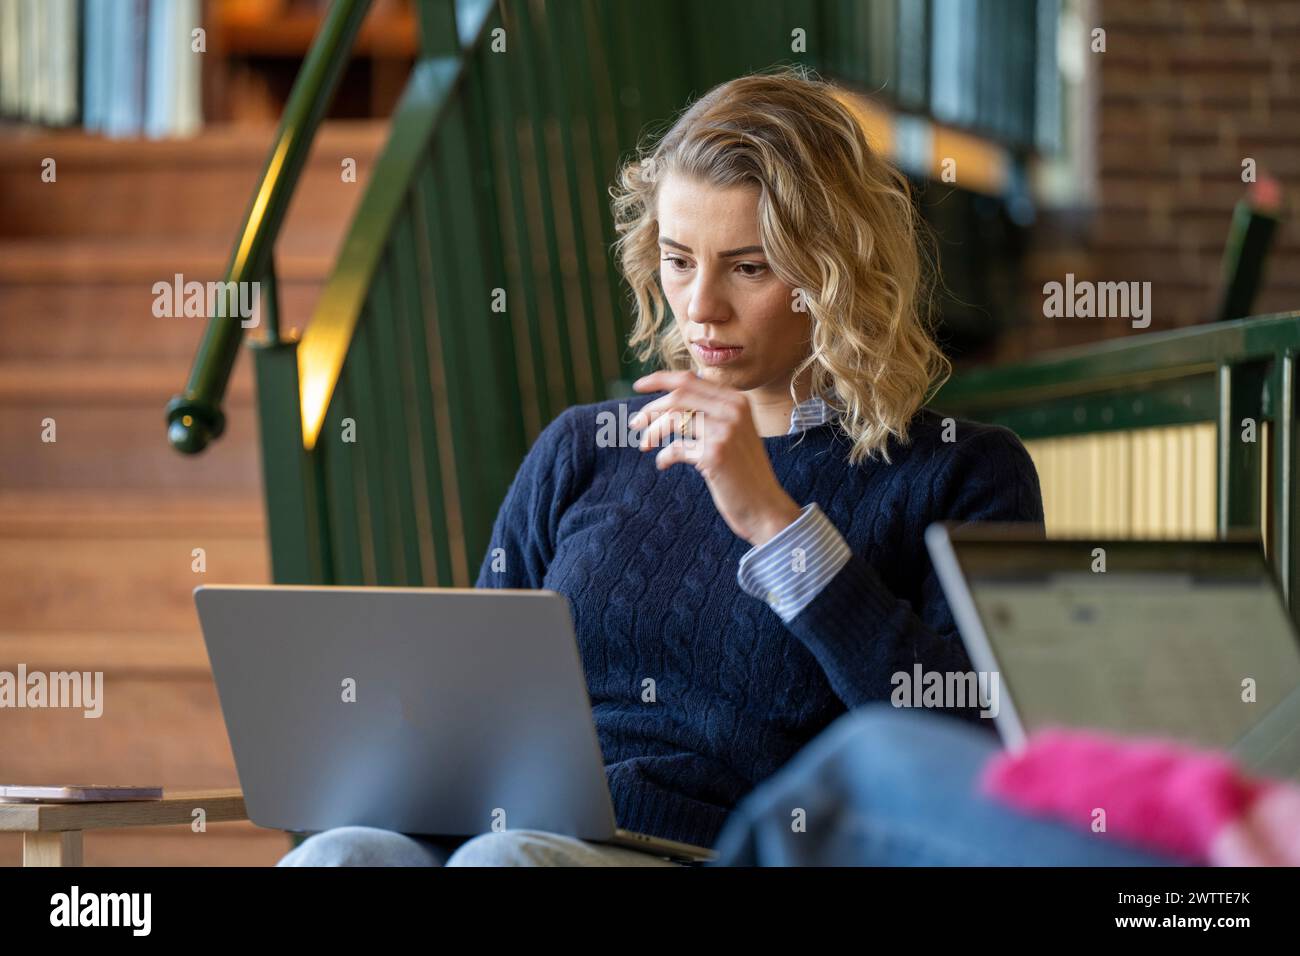 Tief in Gedanken arbeitet eine Frau intensiv an ihrem Laptop in einer gemütlichen Innenumgebung. Stockfoto